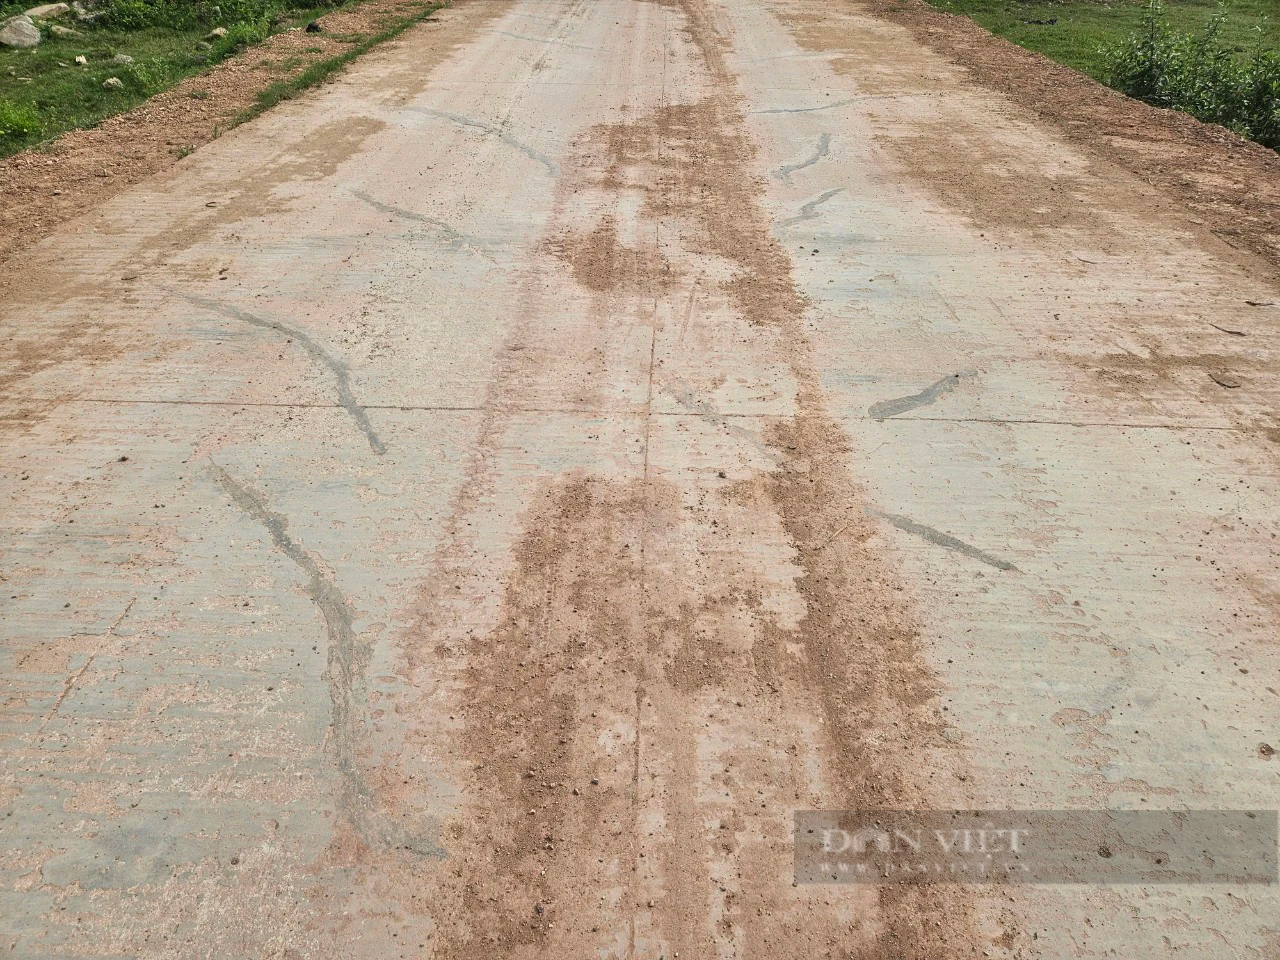 Quảng Bình: Nhiều vết nứt trên đoạn đường 200m dẫn vào nghĩa trang - Ảnh 2.